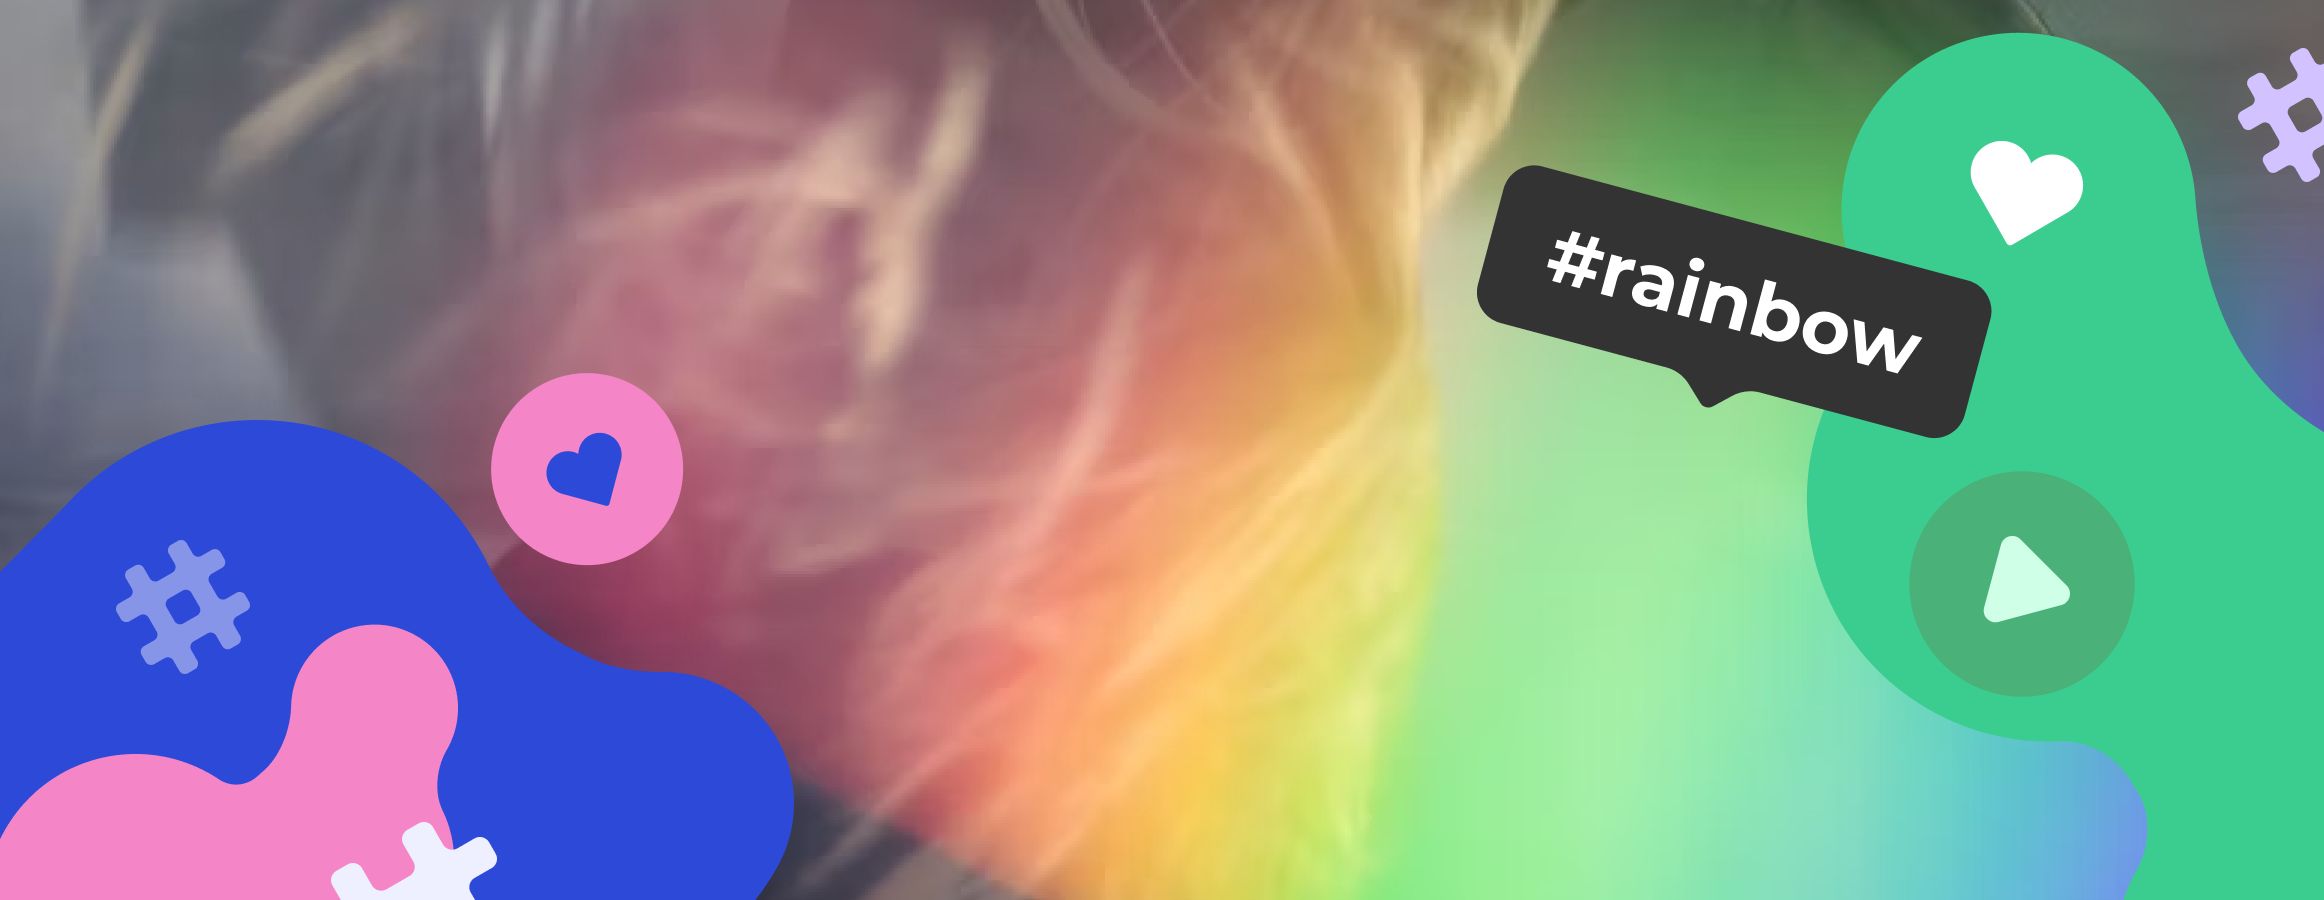 Rainbow hashtags